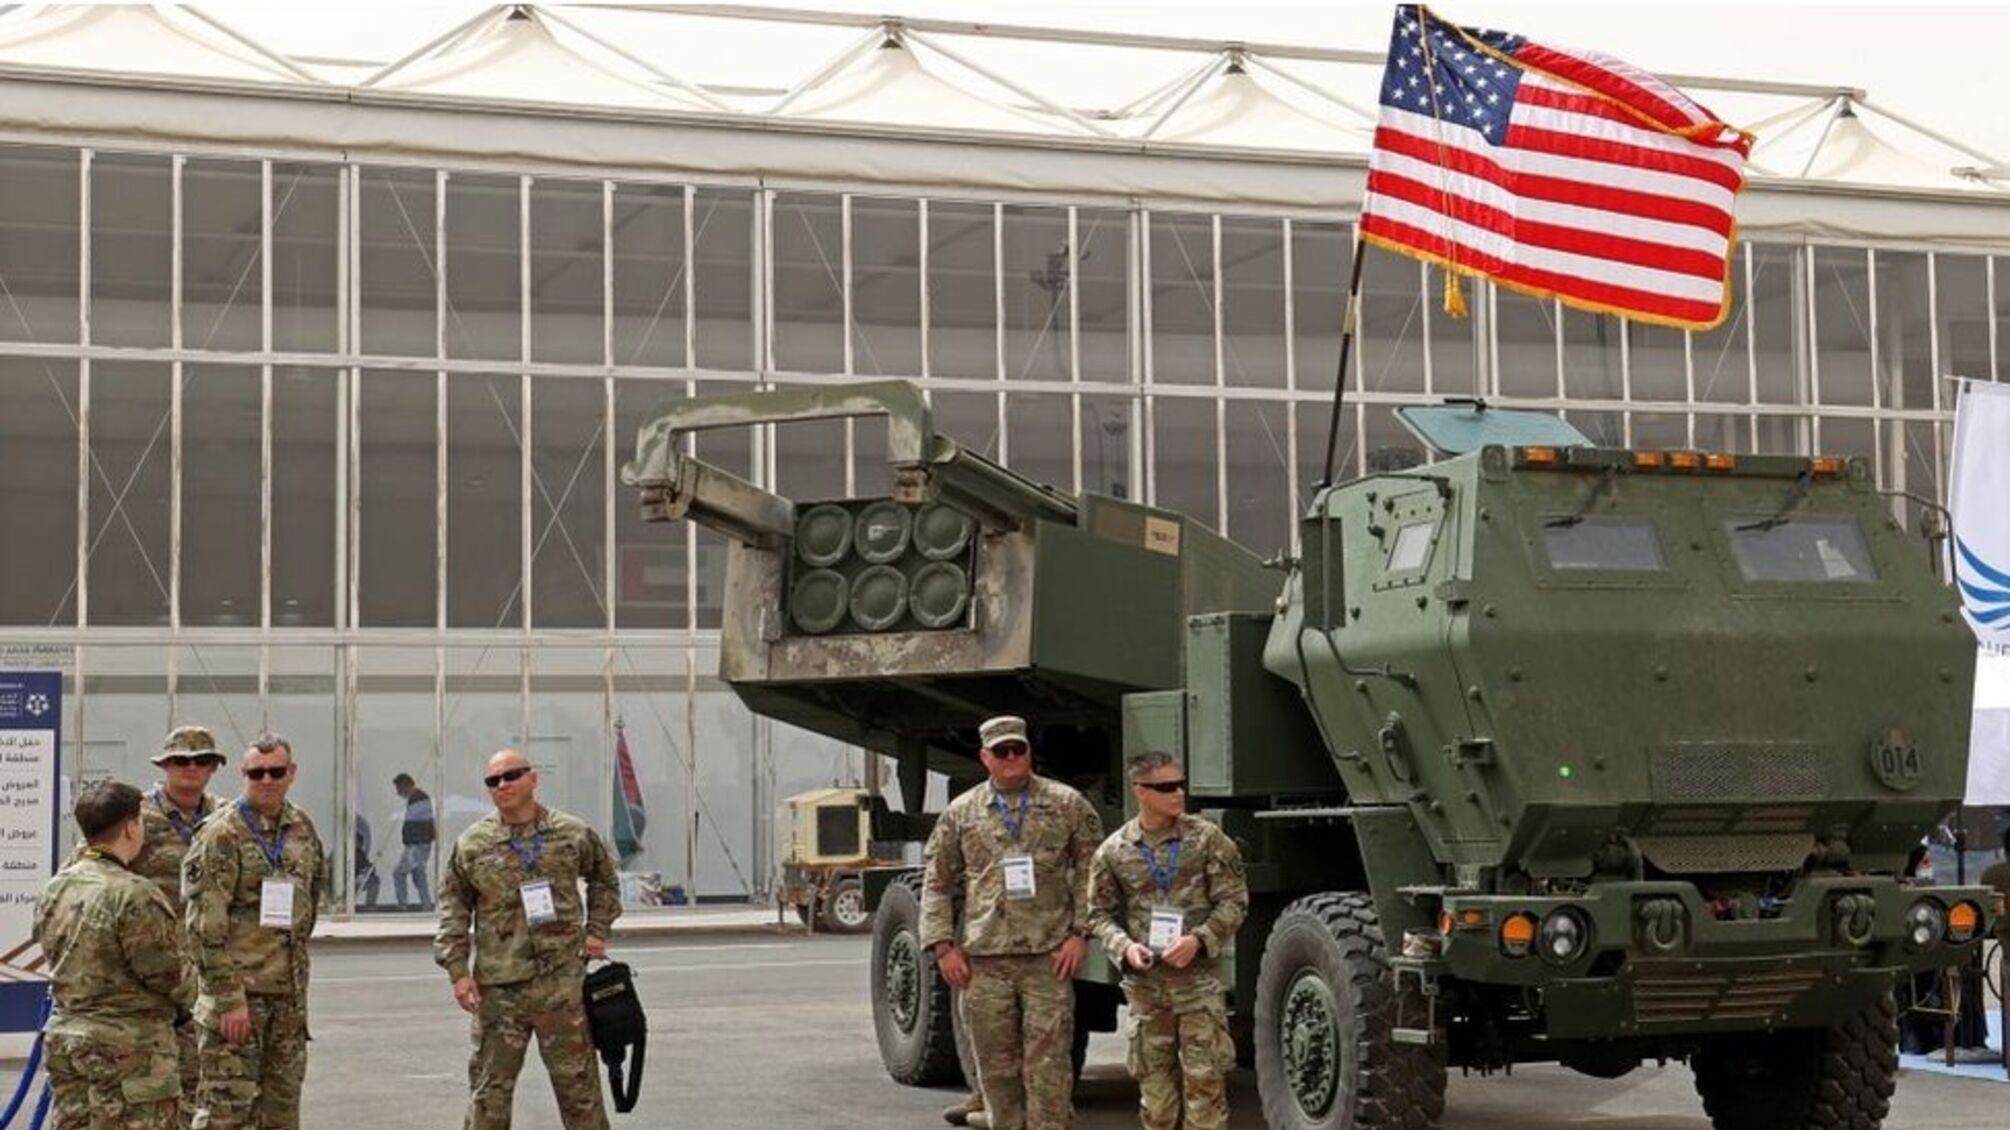 Мужчины в военной форме на фоне техники и флага США